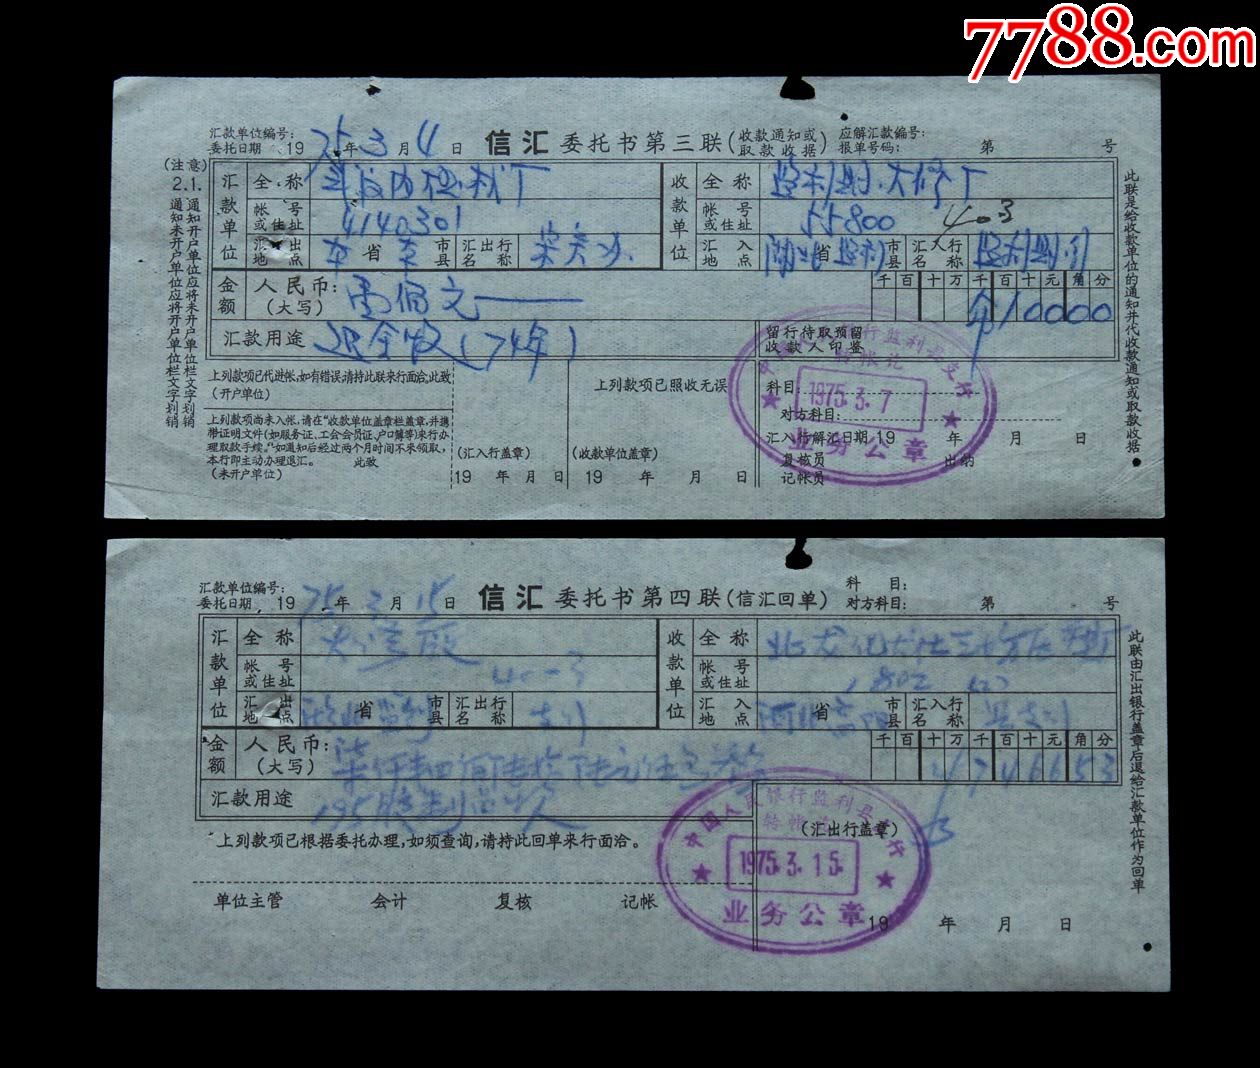 1975年中国人民银行监利县支行信汇单据两张